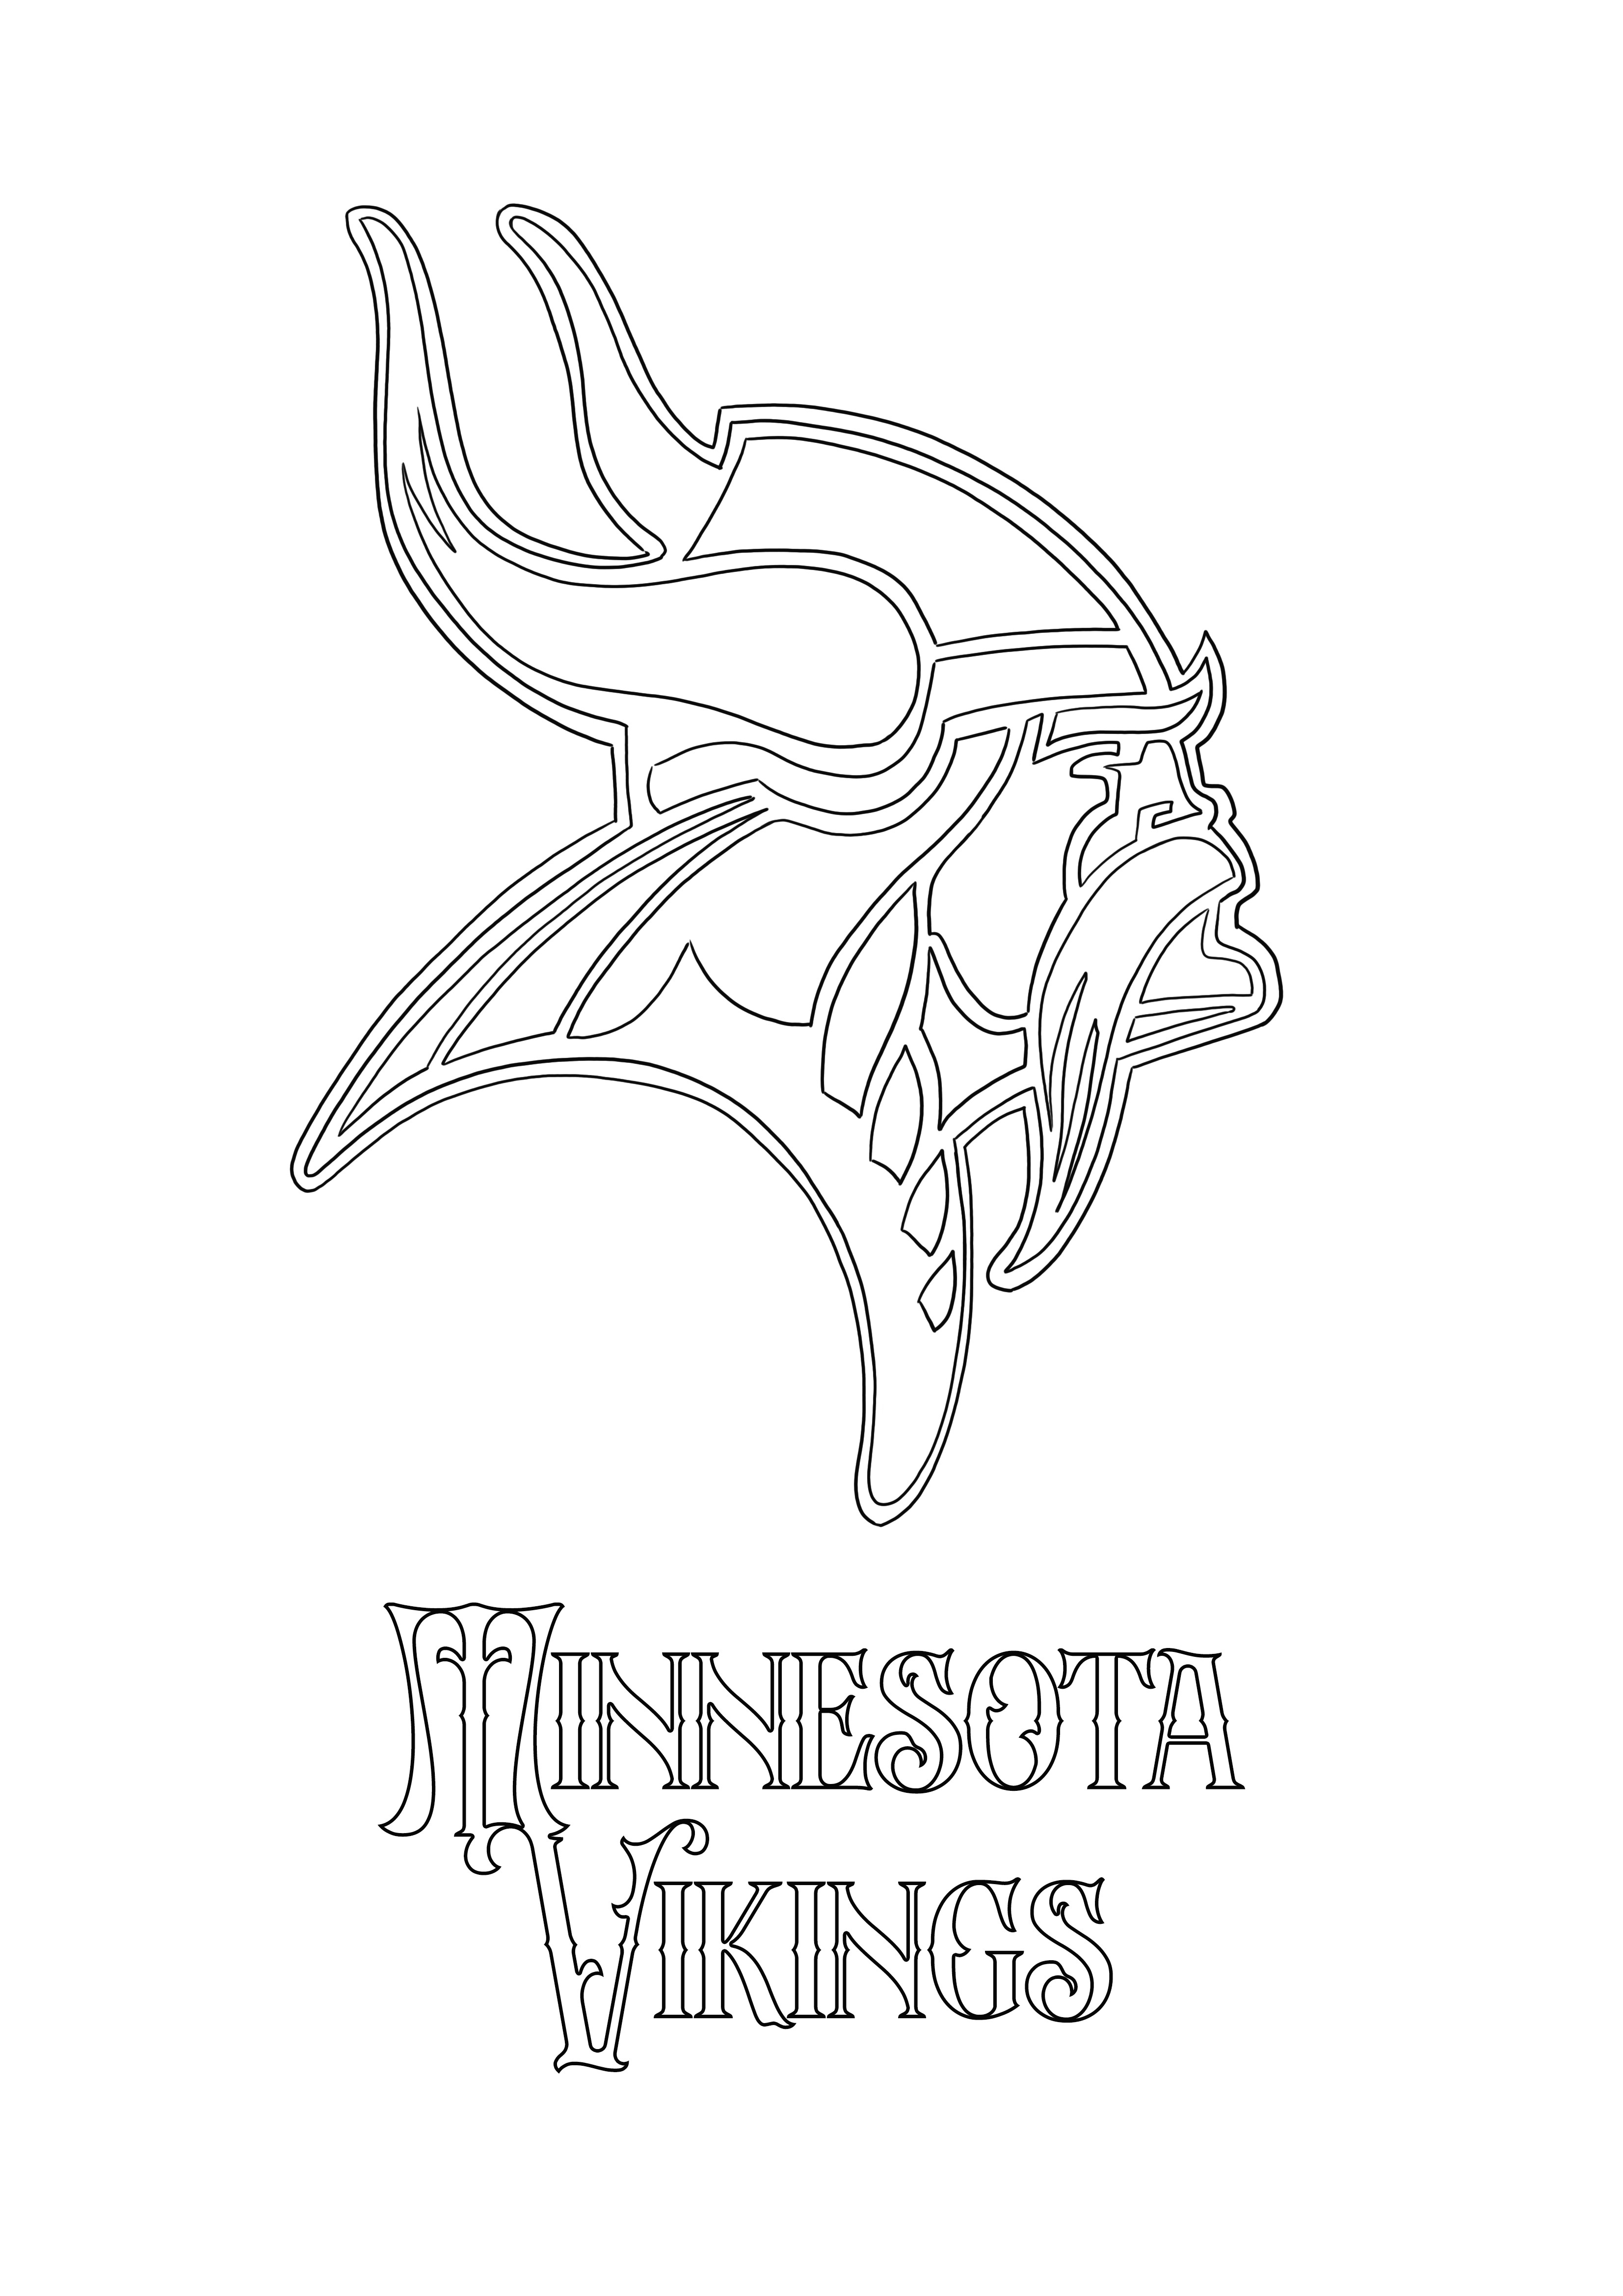 El logotipo de los Minnesota Vikings está listo para ser descargado y coloreado por los pequeños amantes de los vikingos.